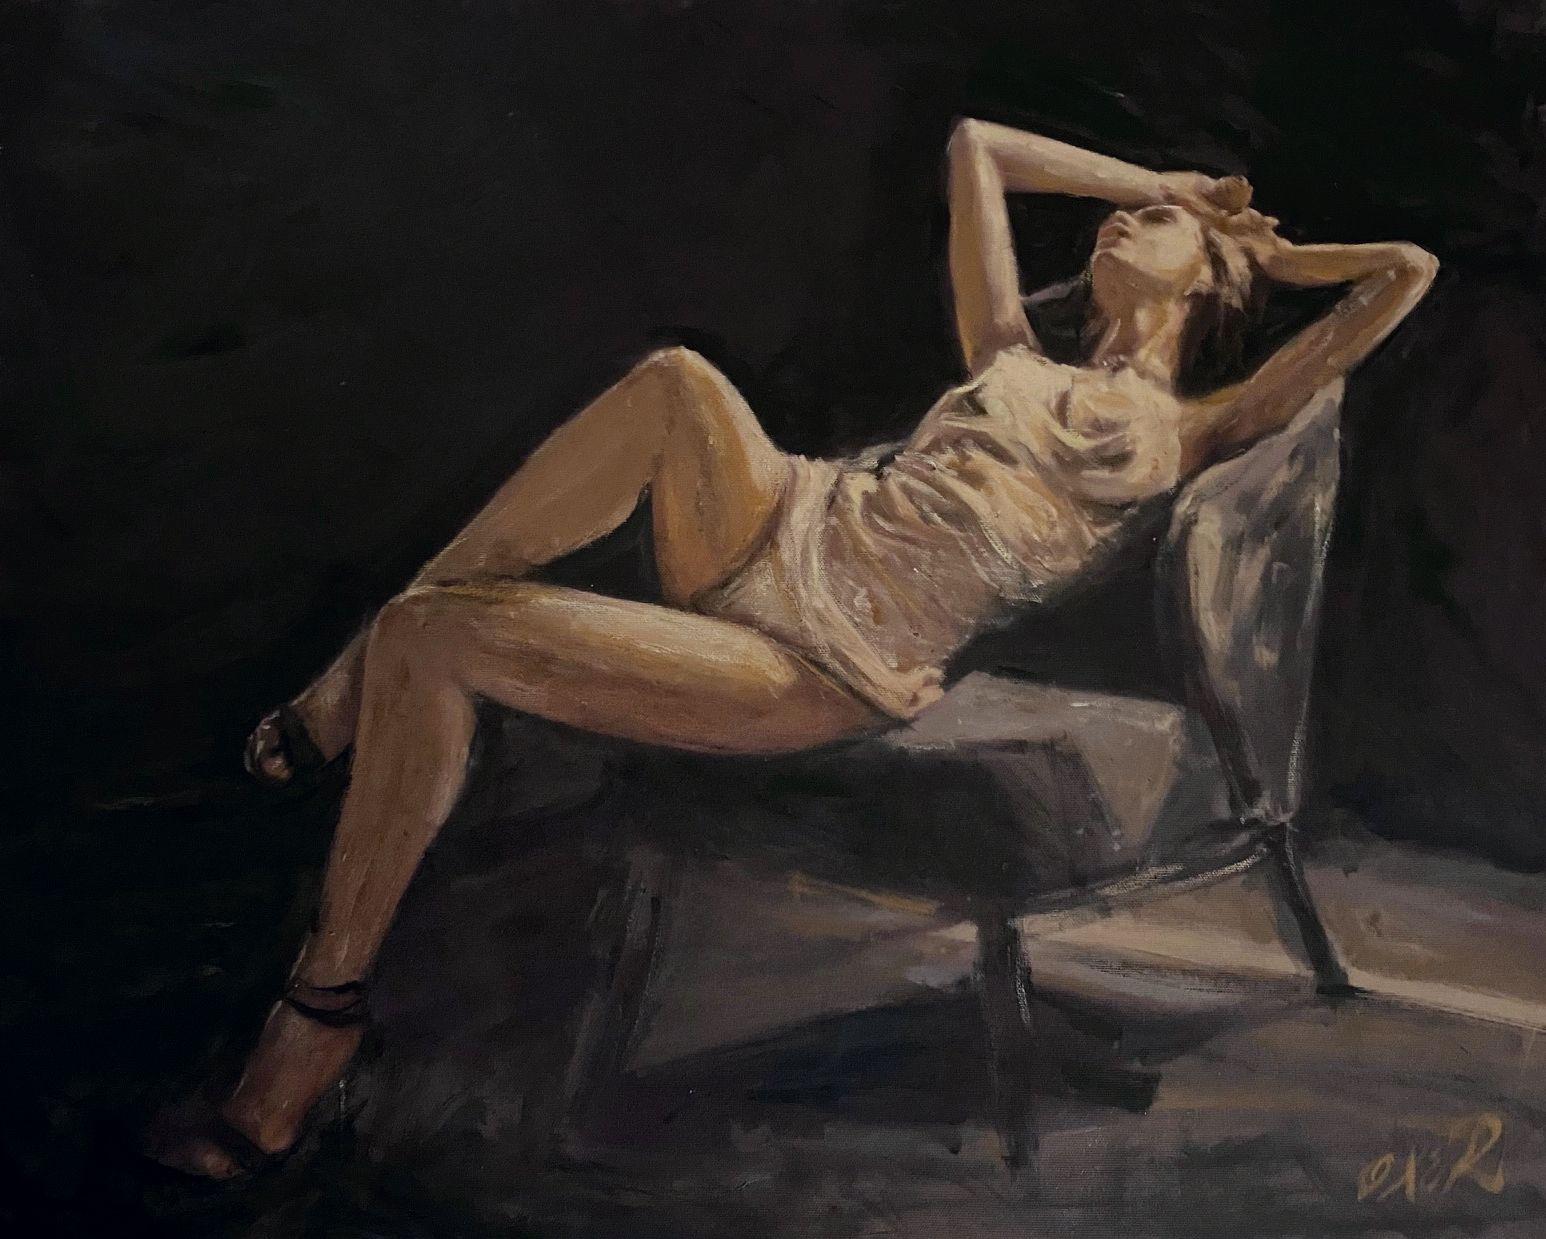 Mémoires de nuit, peinture, huile sur toile - Painting de William Oxer F.R.S.A.